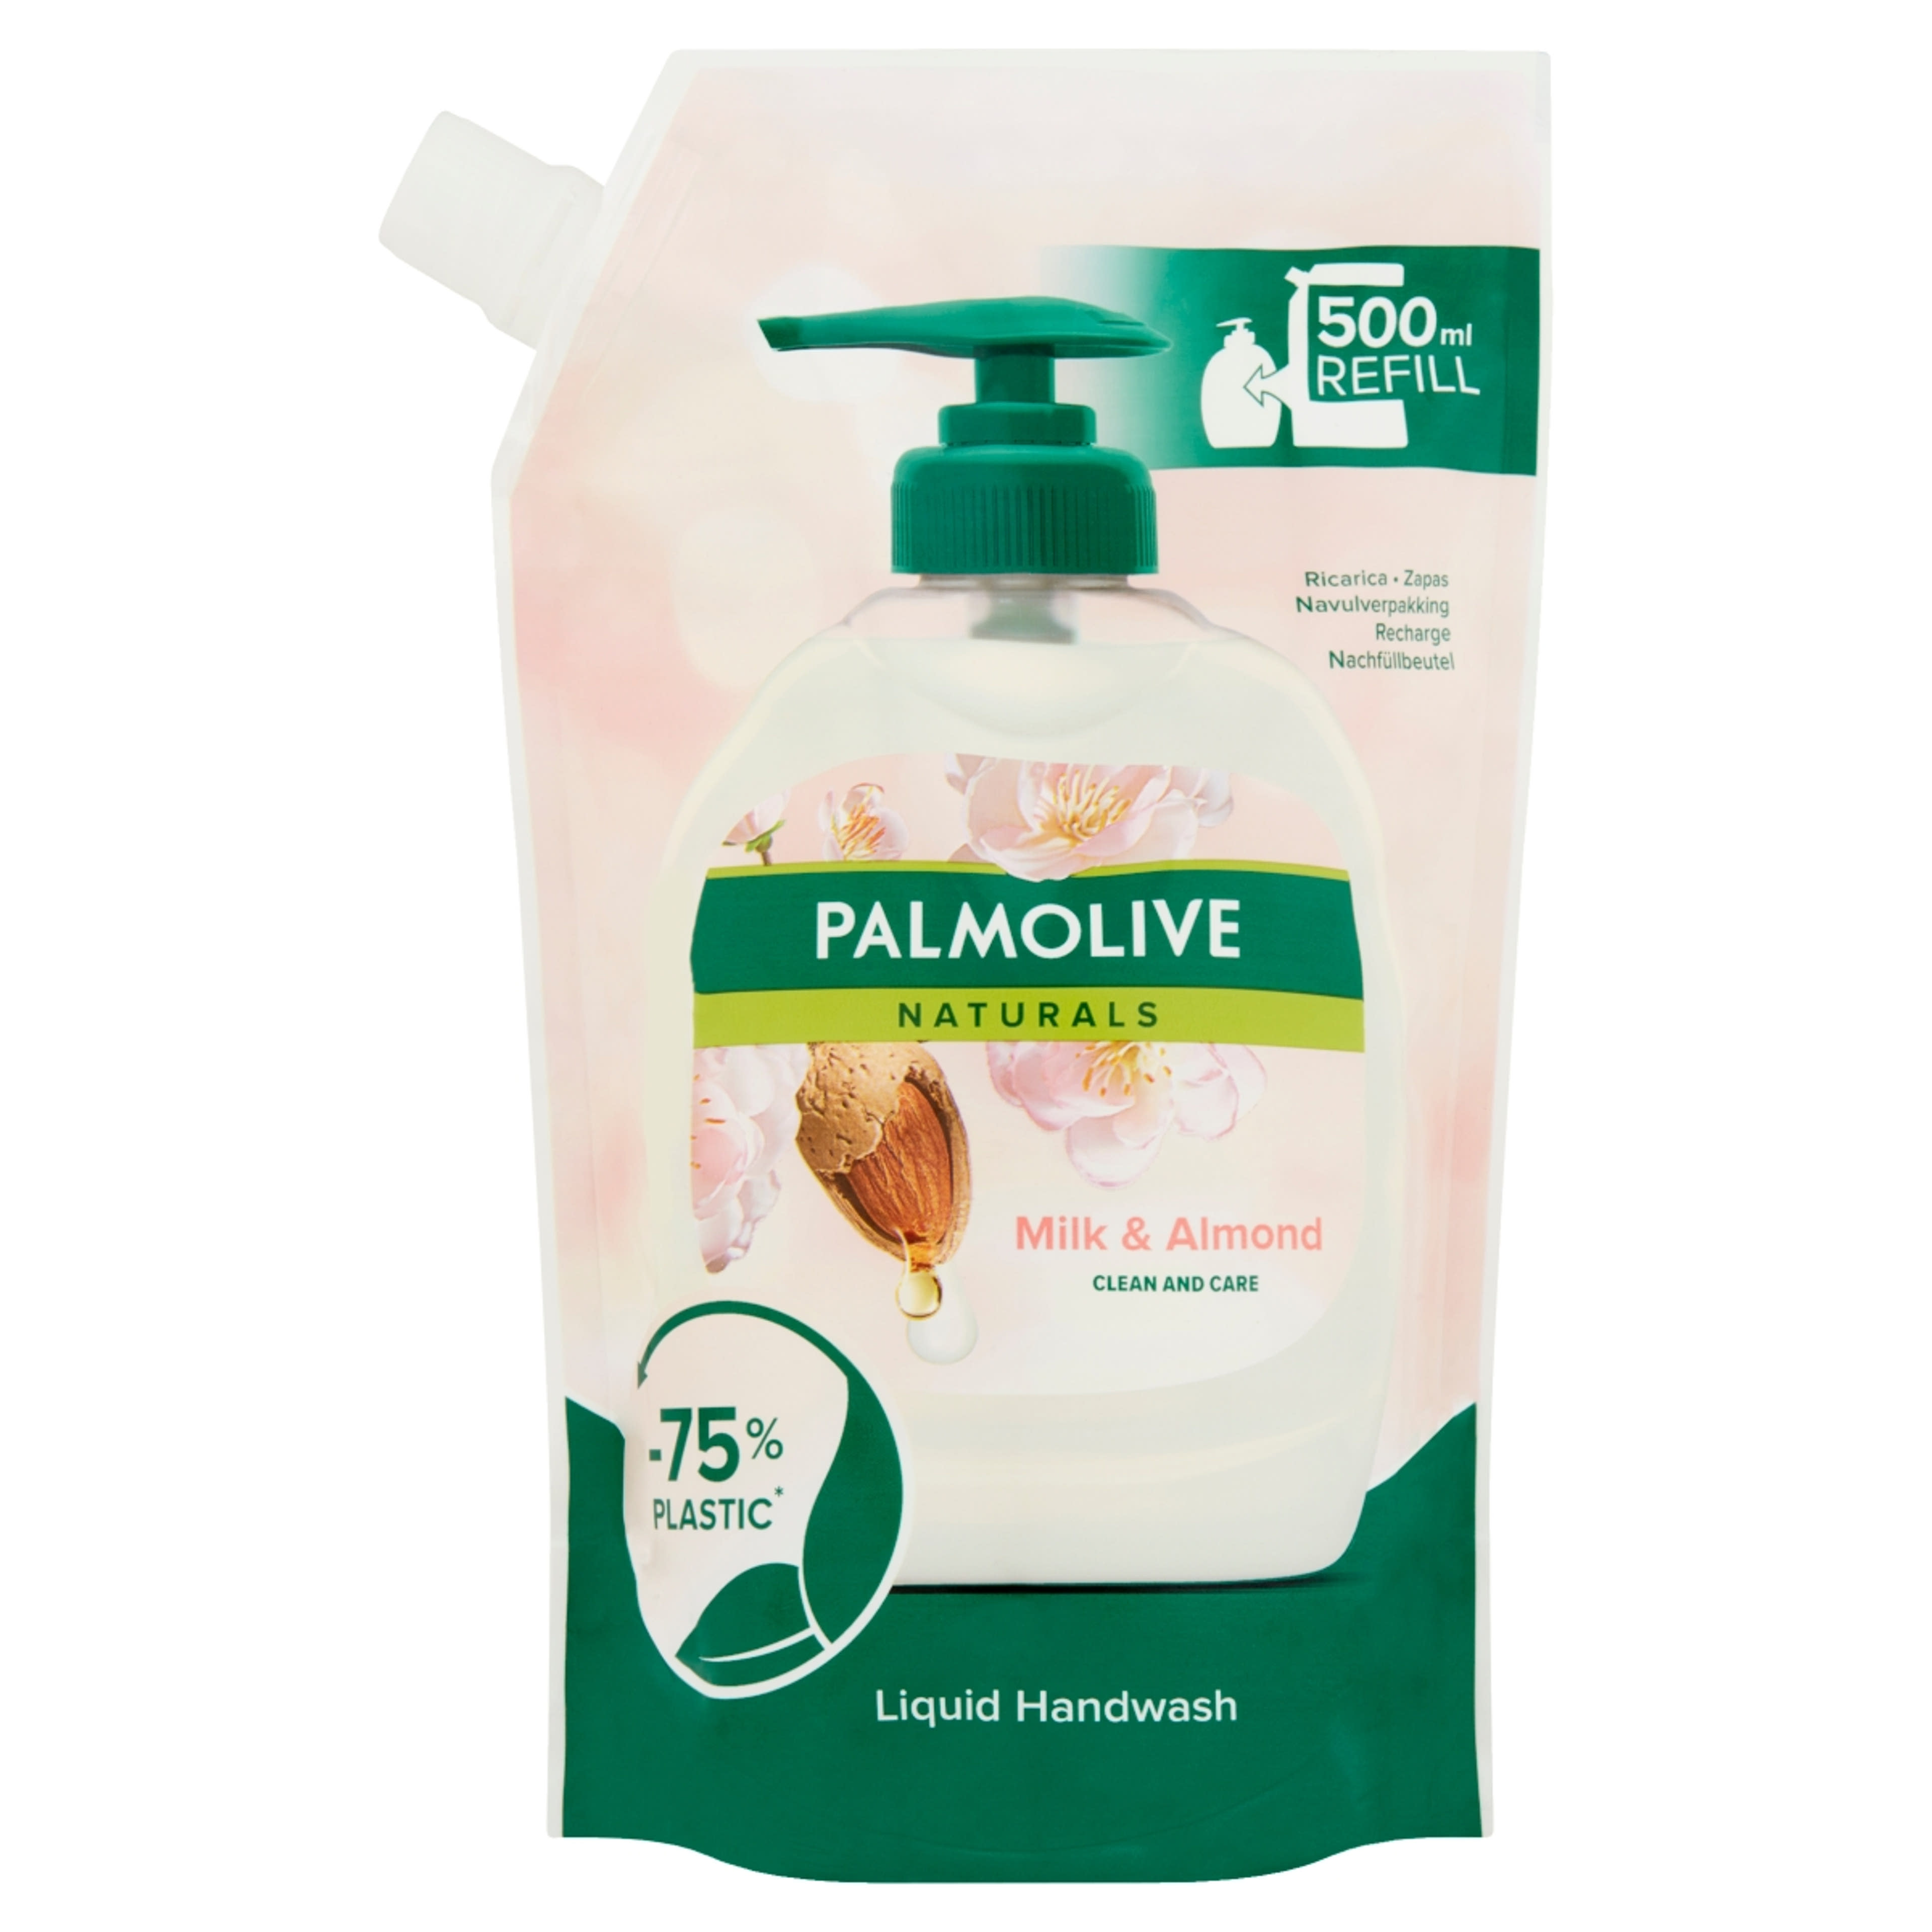 Palmolive Naturals Milk & Almond folyékony szappan utántöltő - 500 ml